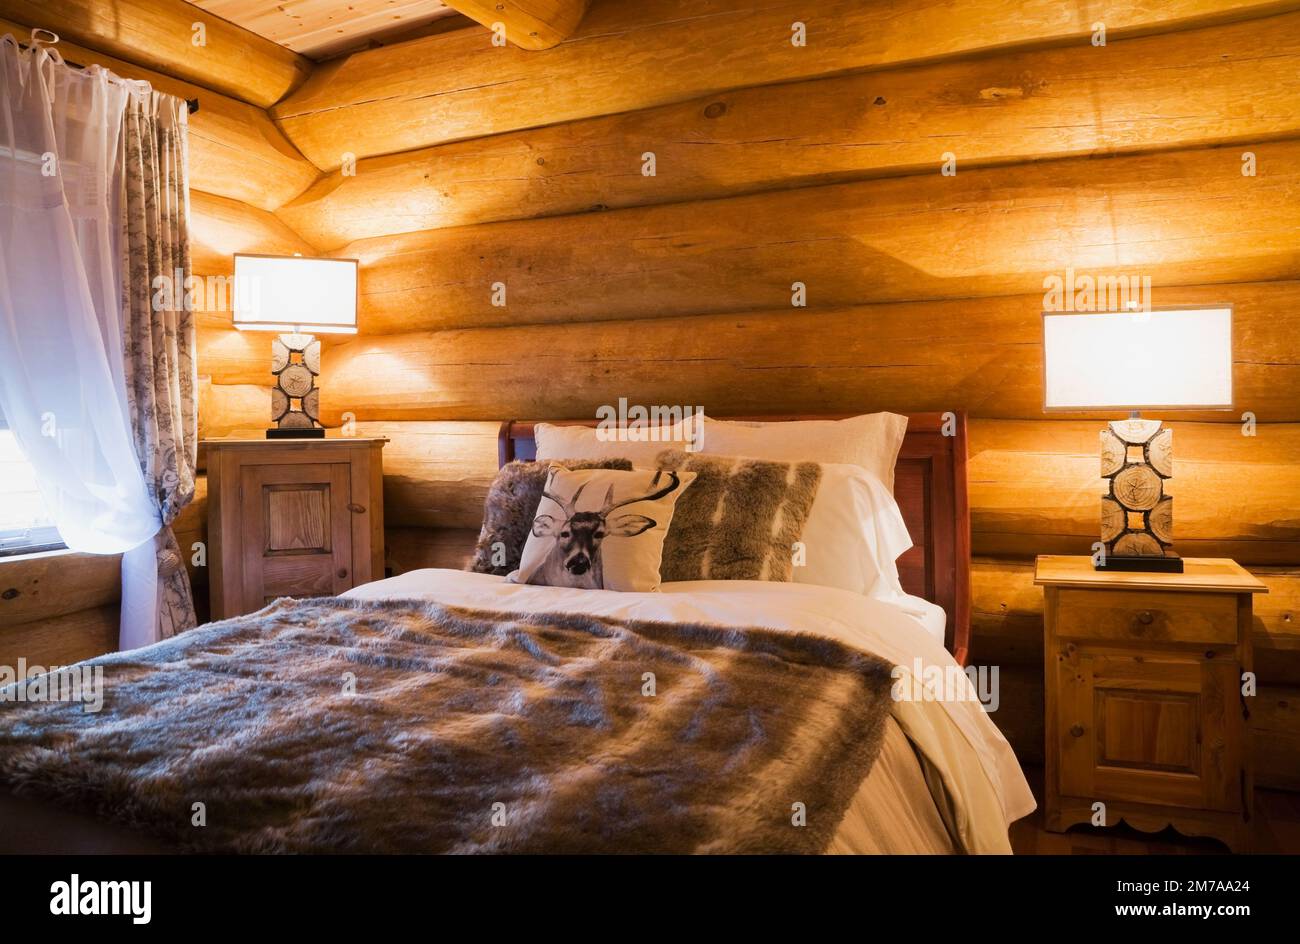 Cama queen size y mesitas de noche de madera con lámparas iluminadas en el dormitorio de invitados en la planta baja dentro de la lujosa casa de madera escandinava. Foto de stock